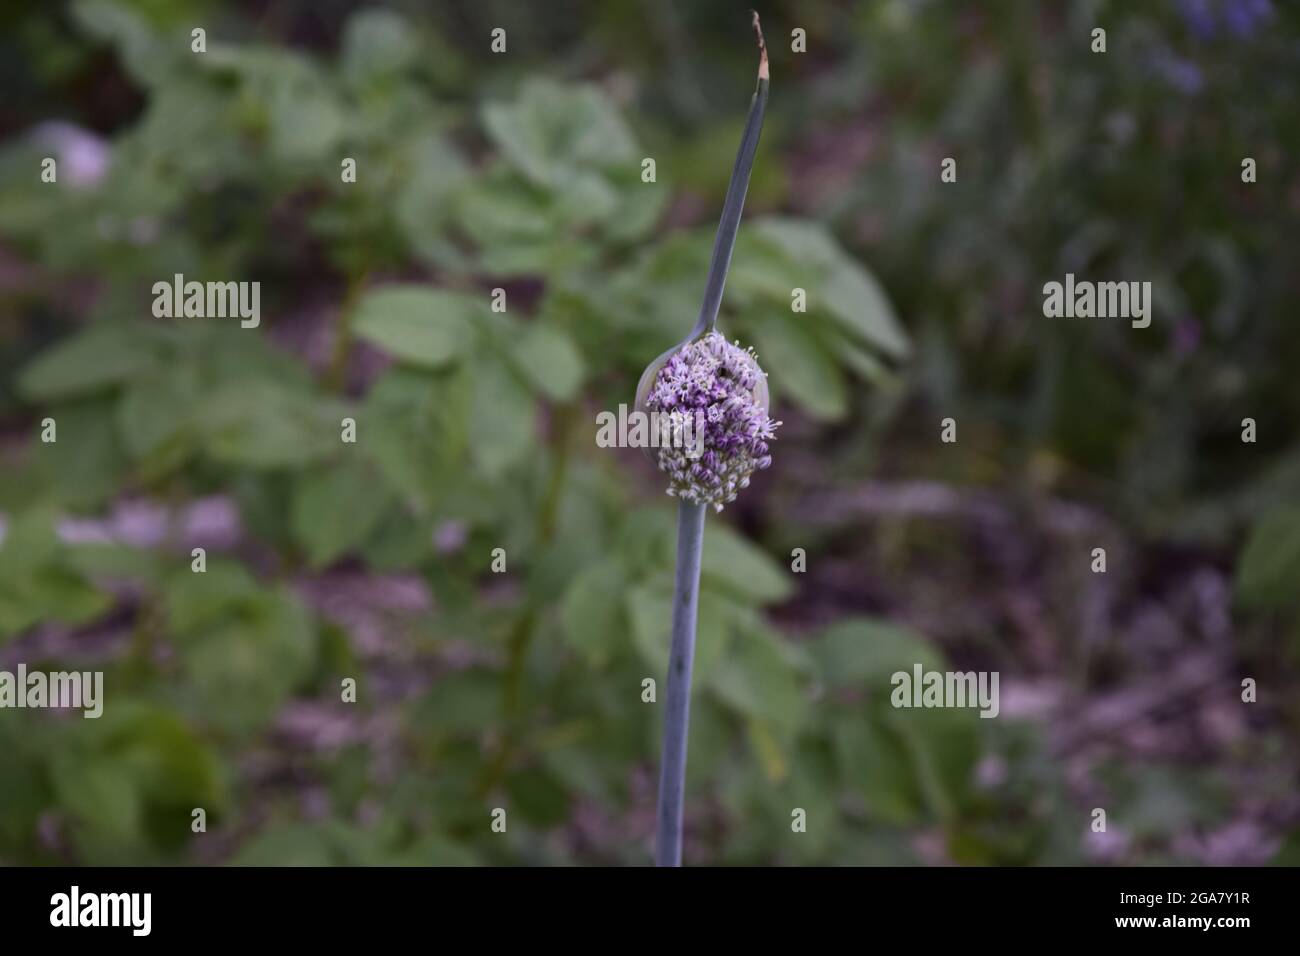 DIEREN, PAESI BASSI - 16 aprile 2021: Un primo piano del fiore viola selvatico che cresce nel giardino. Foto Stock